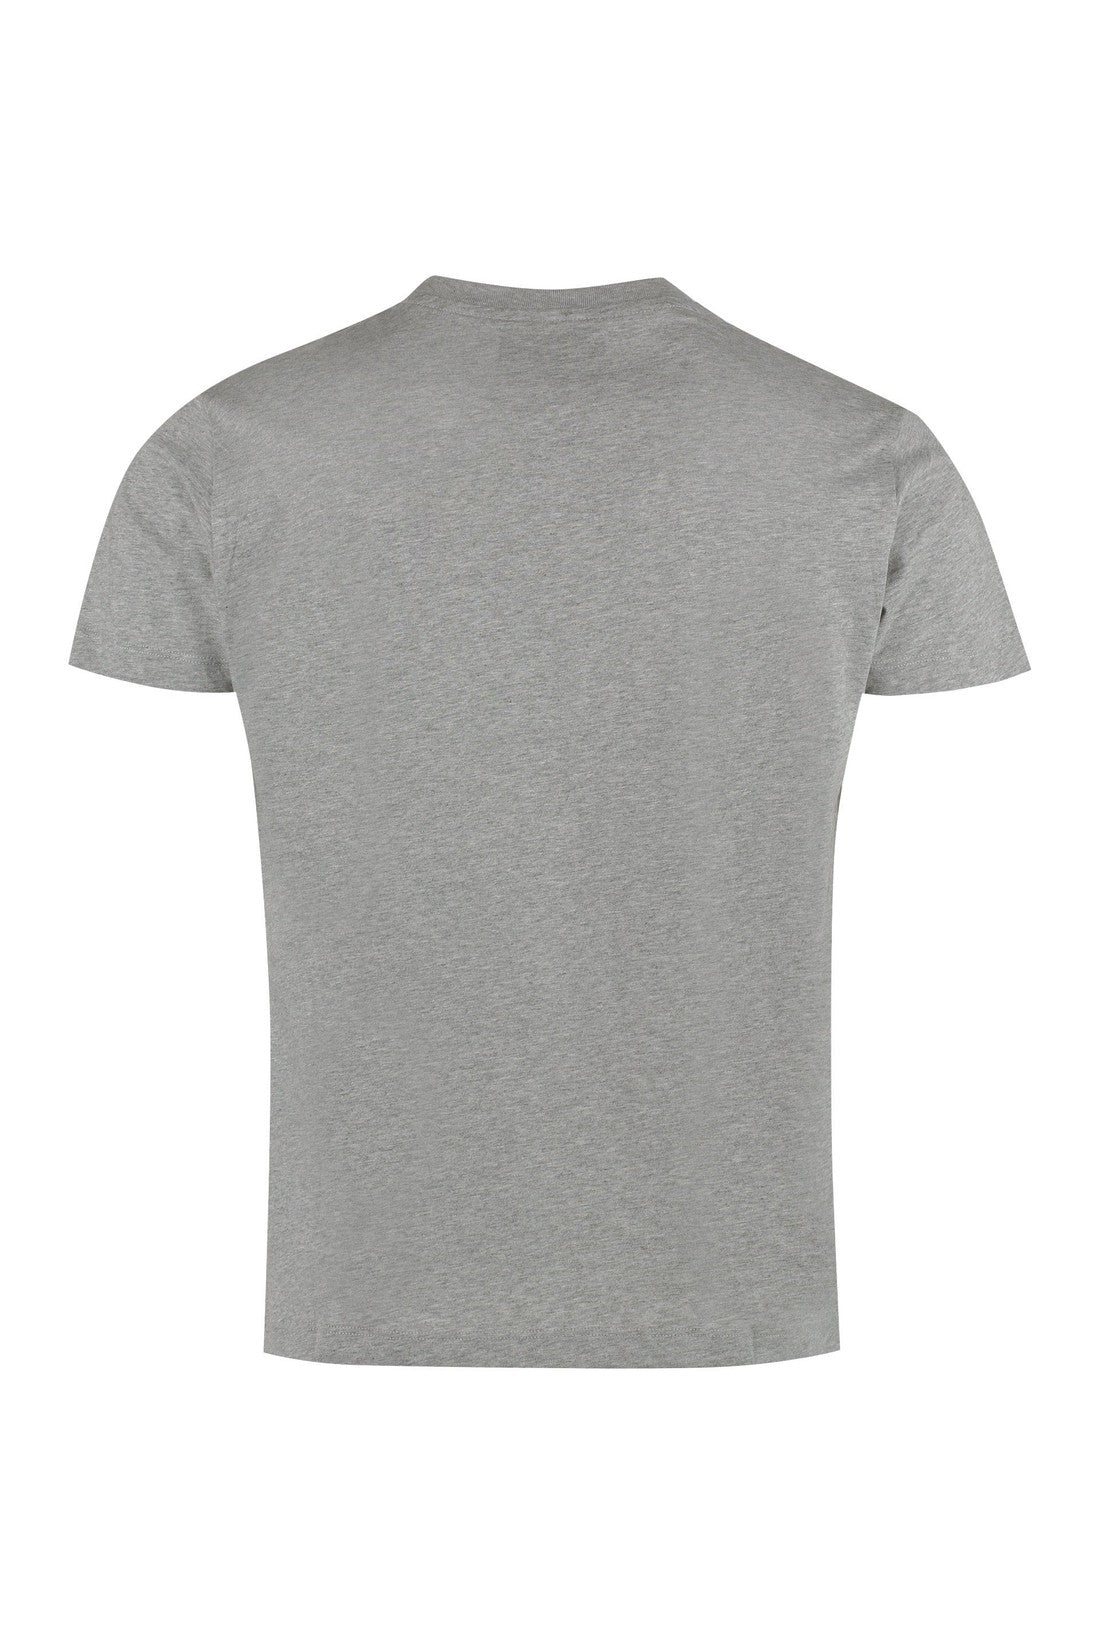 Vilebrequin-OUTLET-SALE-Logo cotton t-shirt-ARCHIVIST